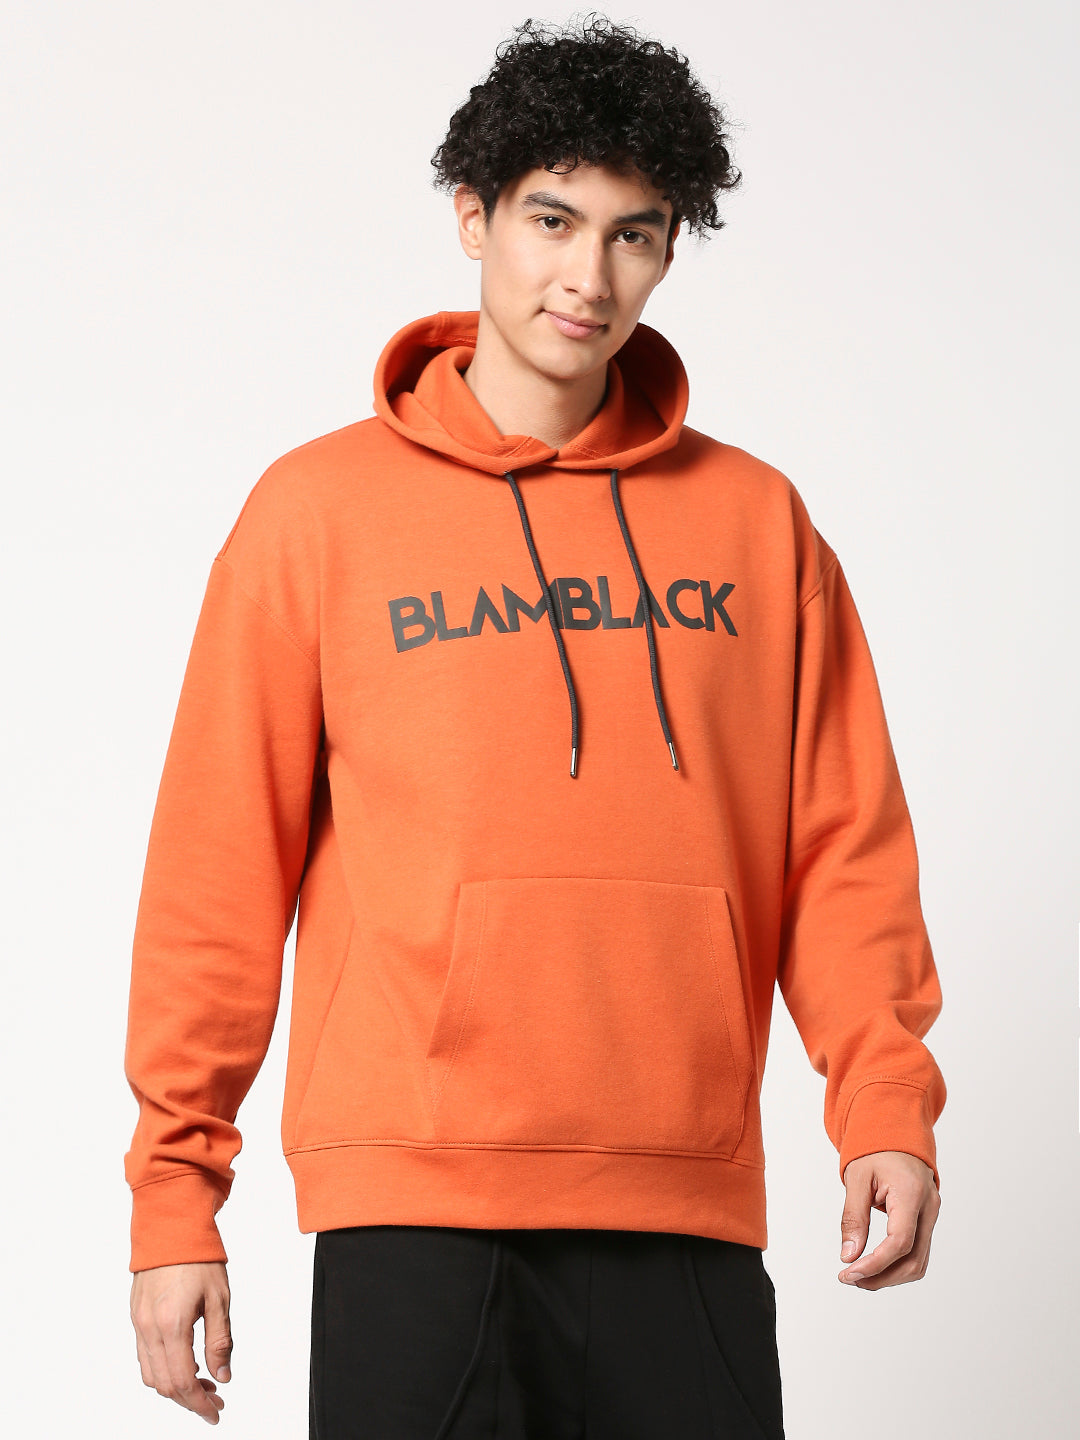 Buy BLAMBLACK Men's Chest Print Full Sleeves Hoodie